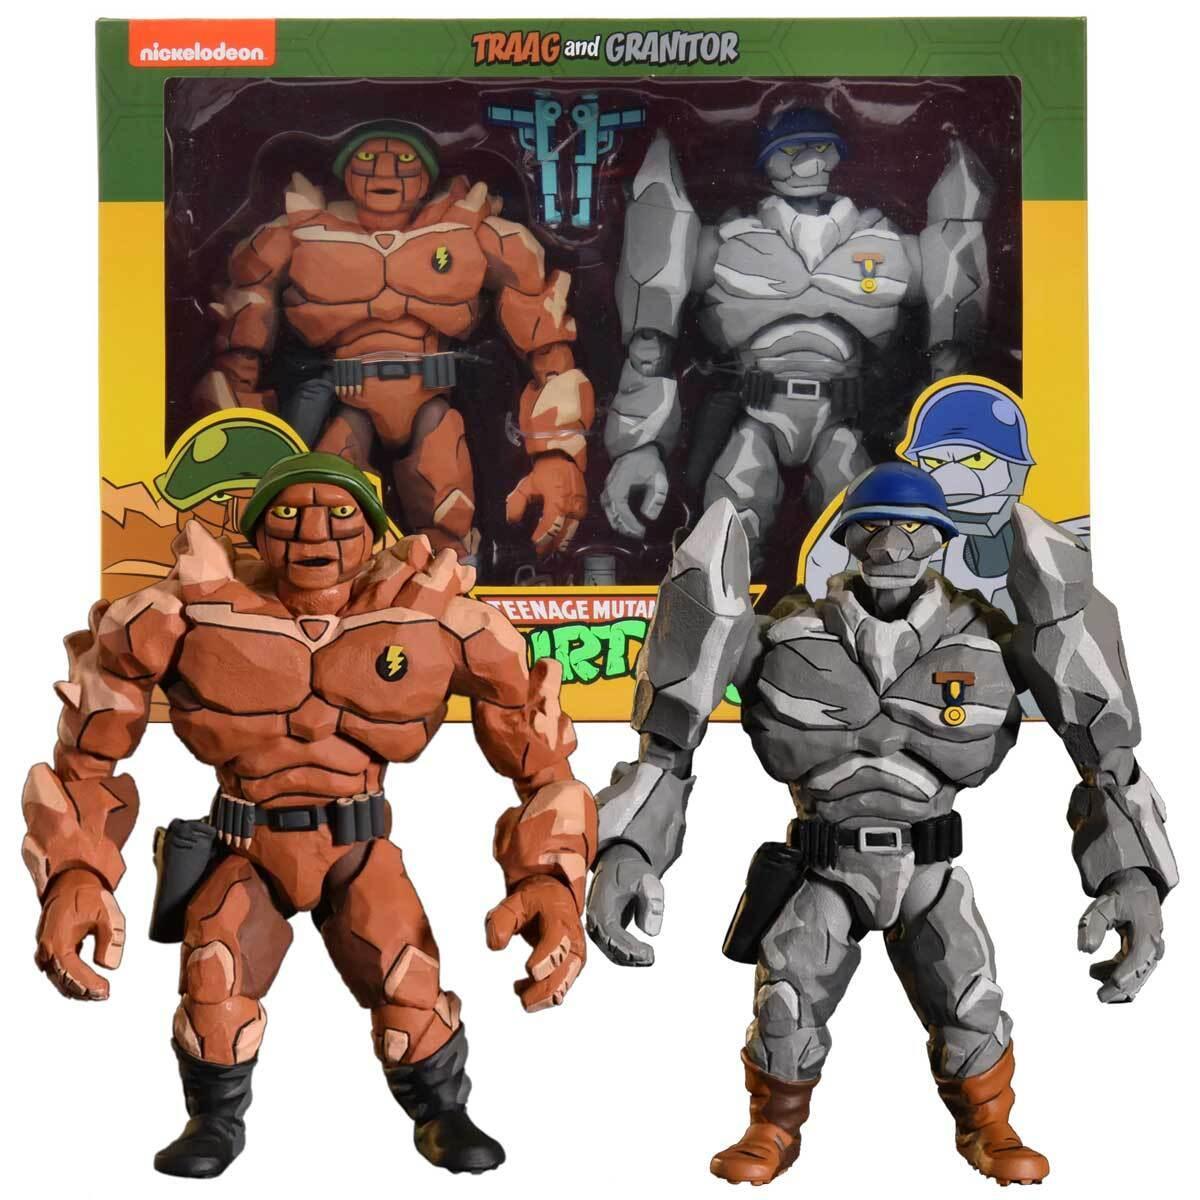 Teenage Mutant Ninja Turtles (1987) NECA 7" Figure 2 Pack - Traag & Granitor